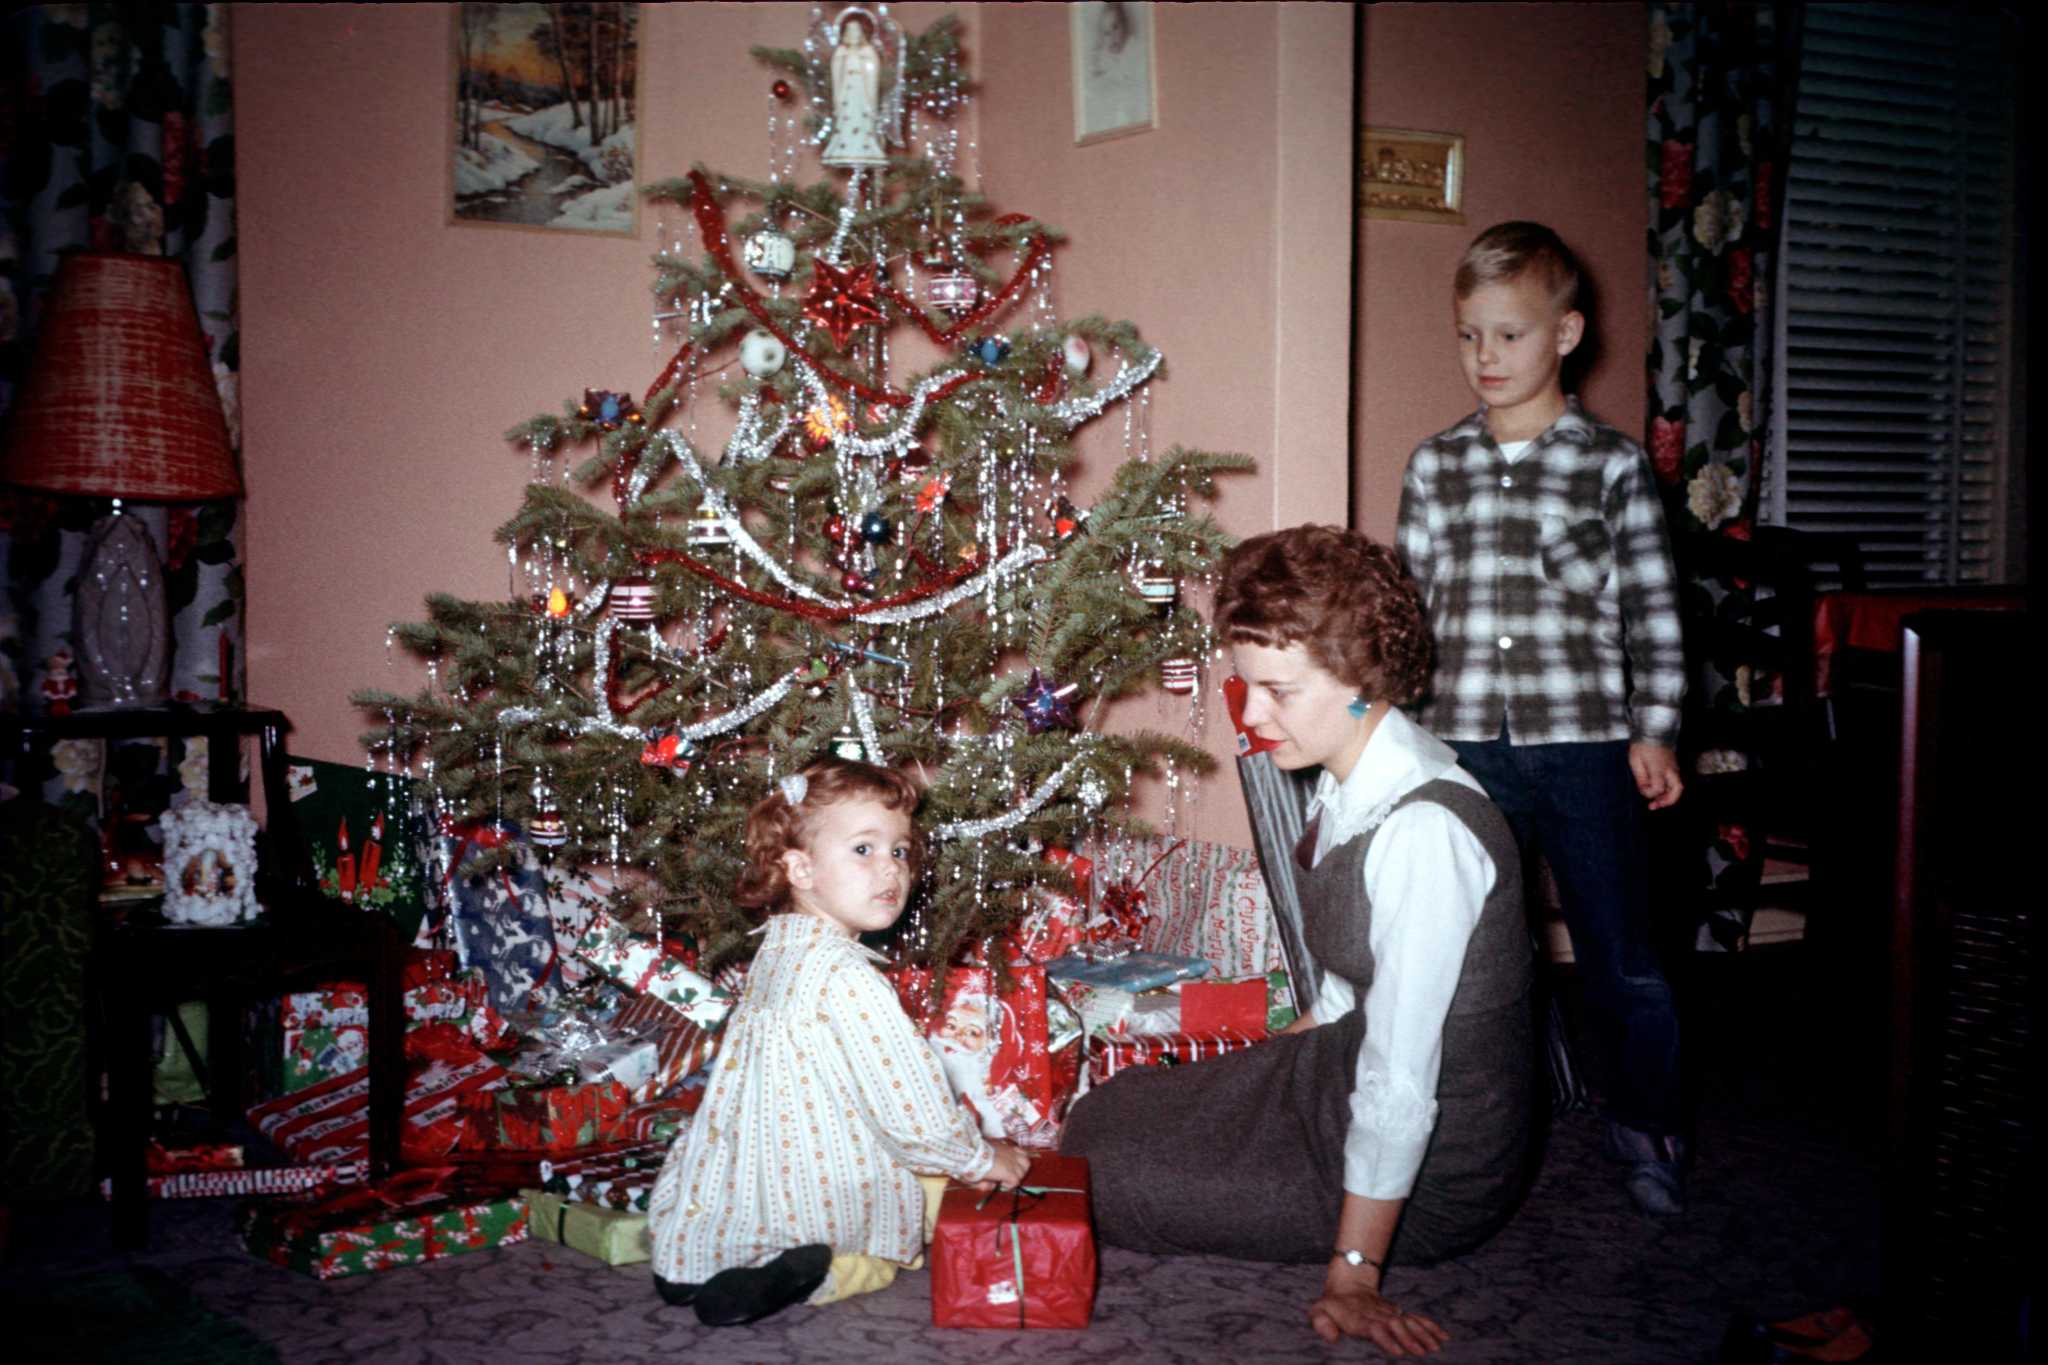 Thiết kế vintage christmas decorations 1960s cho mùa giáng sinh đẹp mắt